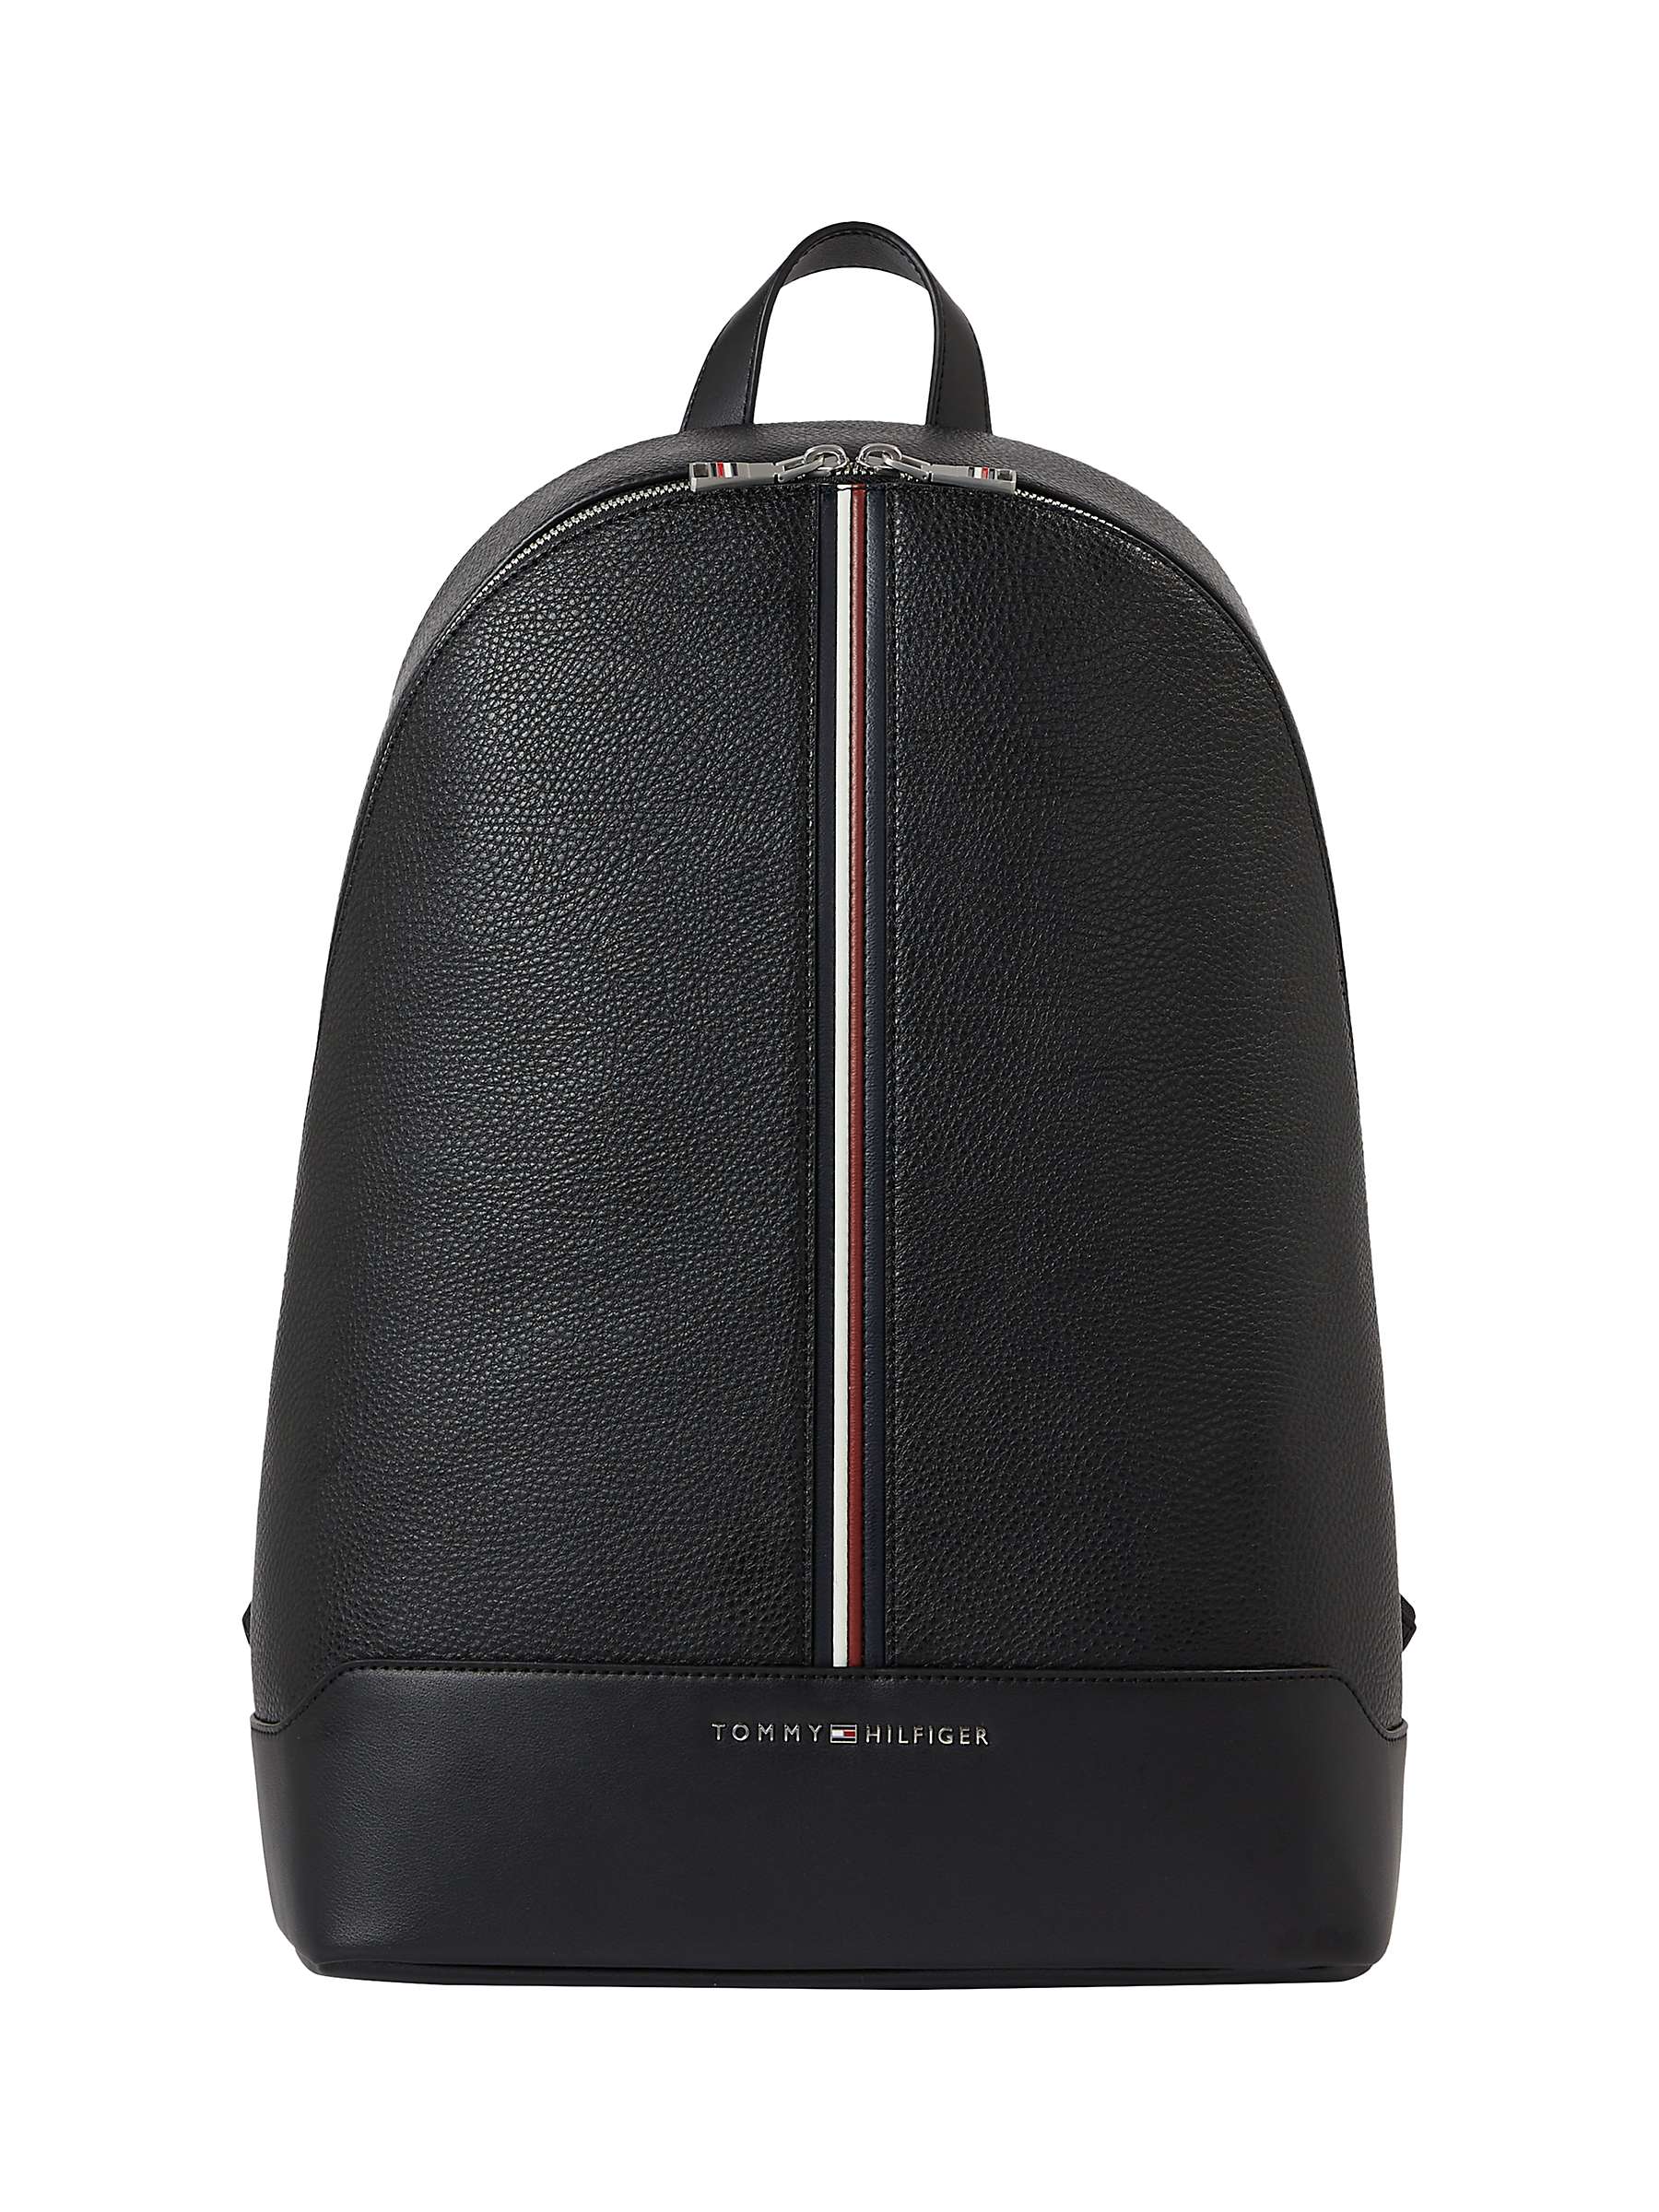 Buy Tommy Hilfiger Domed Backpack, Black Online at johnlewis.com